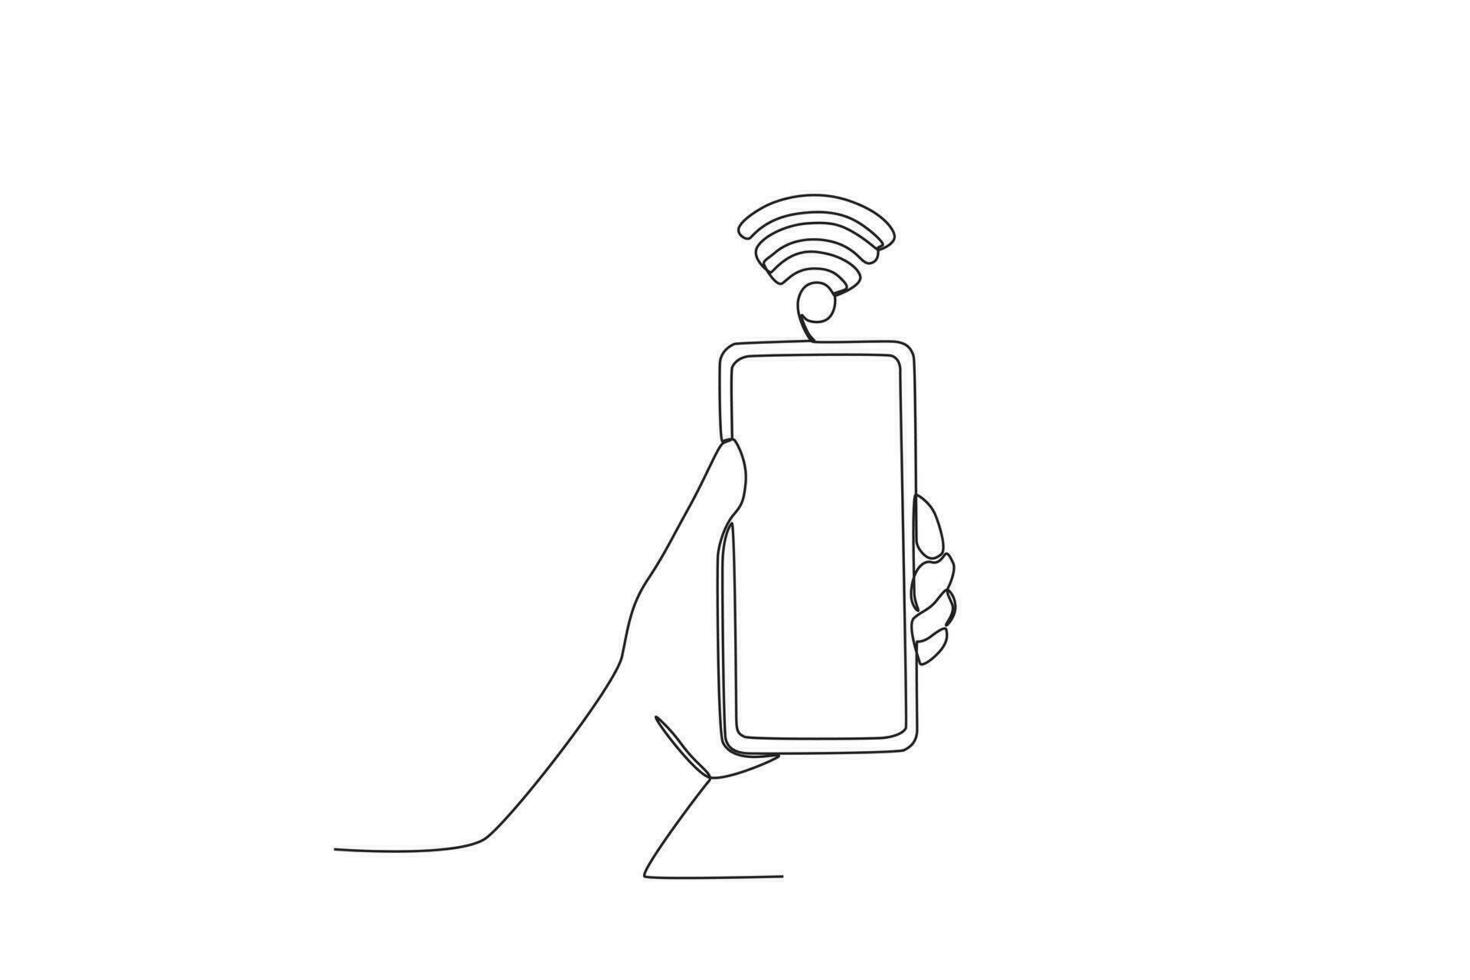 une téléphone portable connecté à sans fil fidélité vecteur